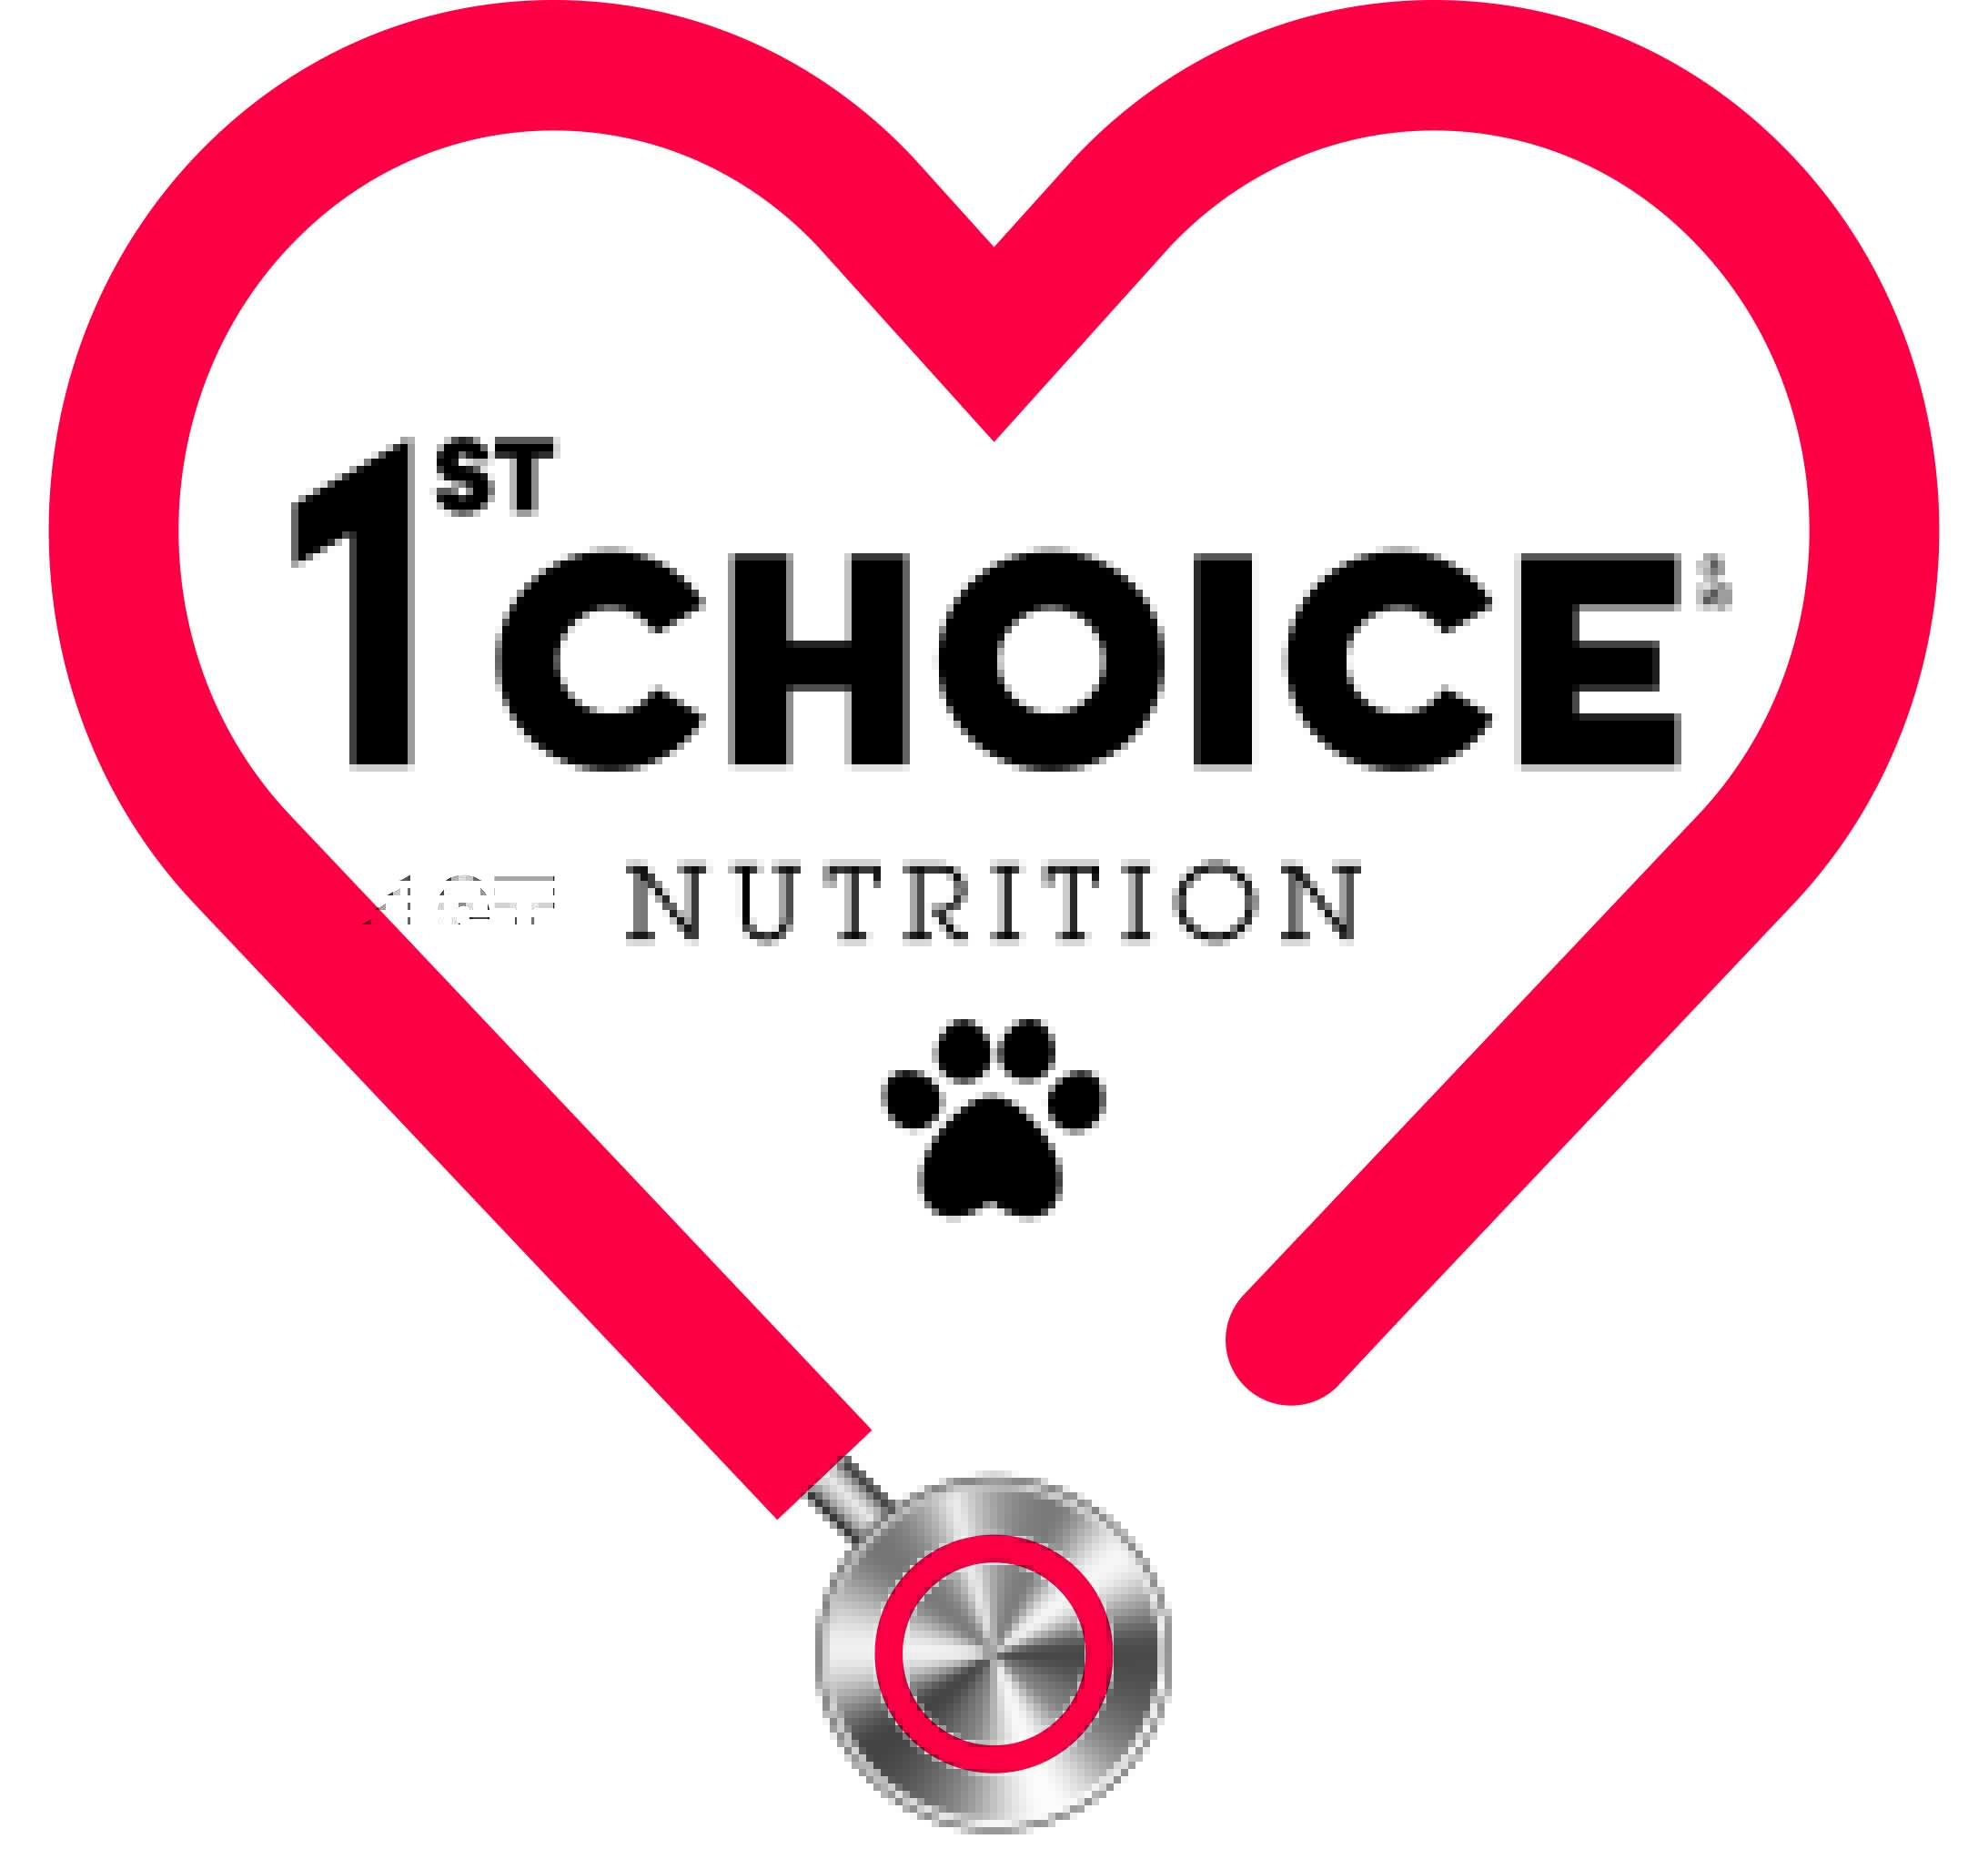 1st Choice Nutrition